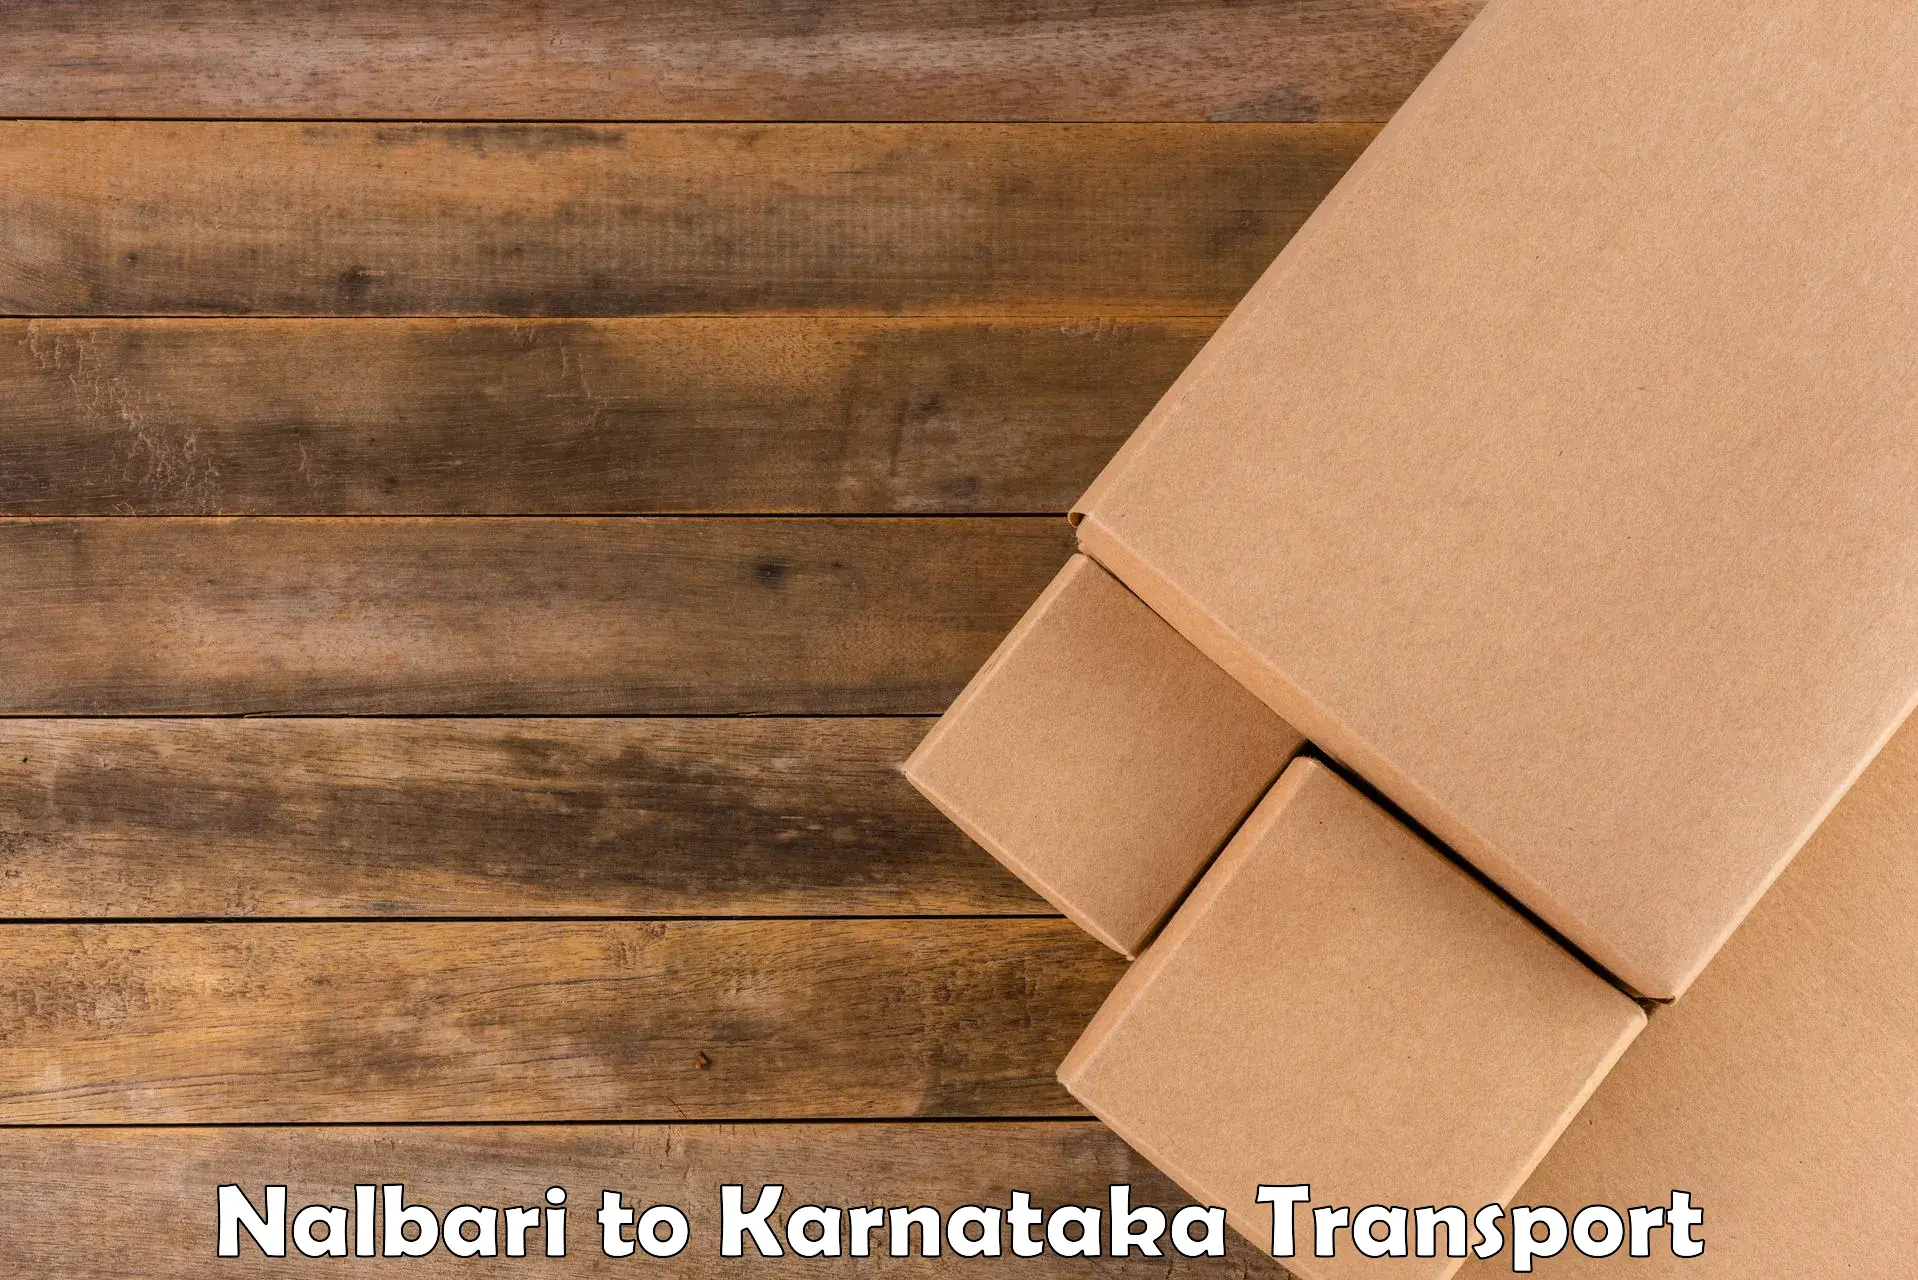 Sending bike to another city Nalbari to Karnataka